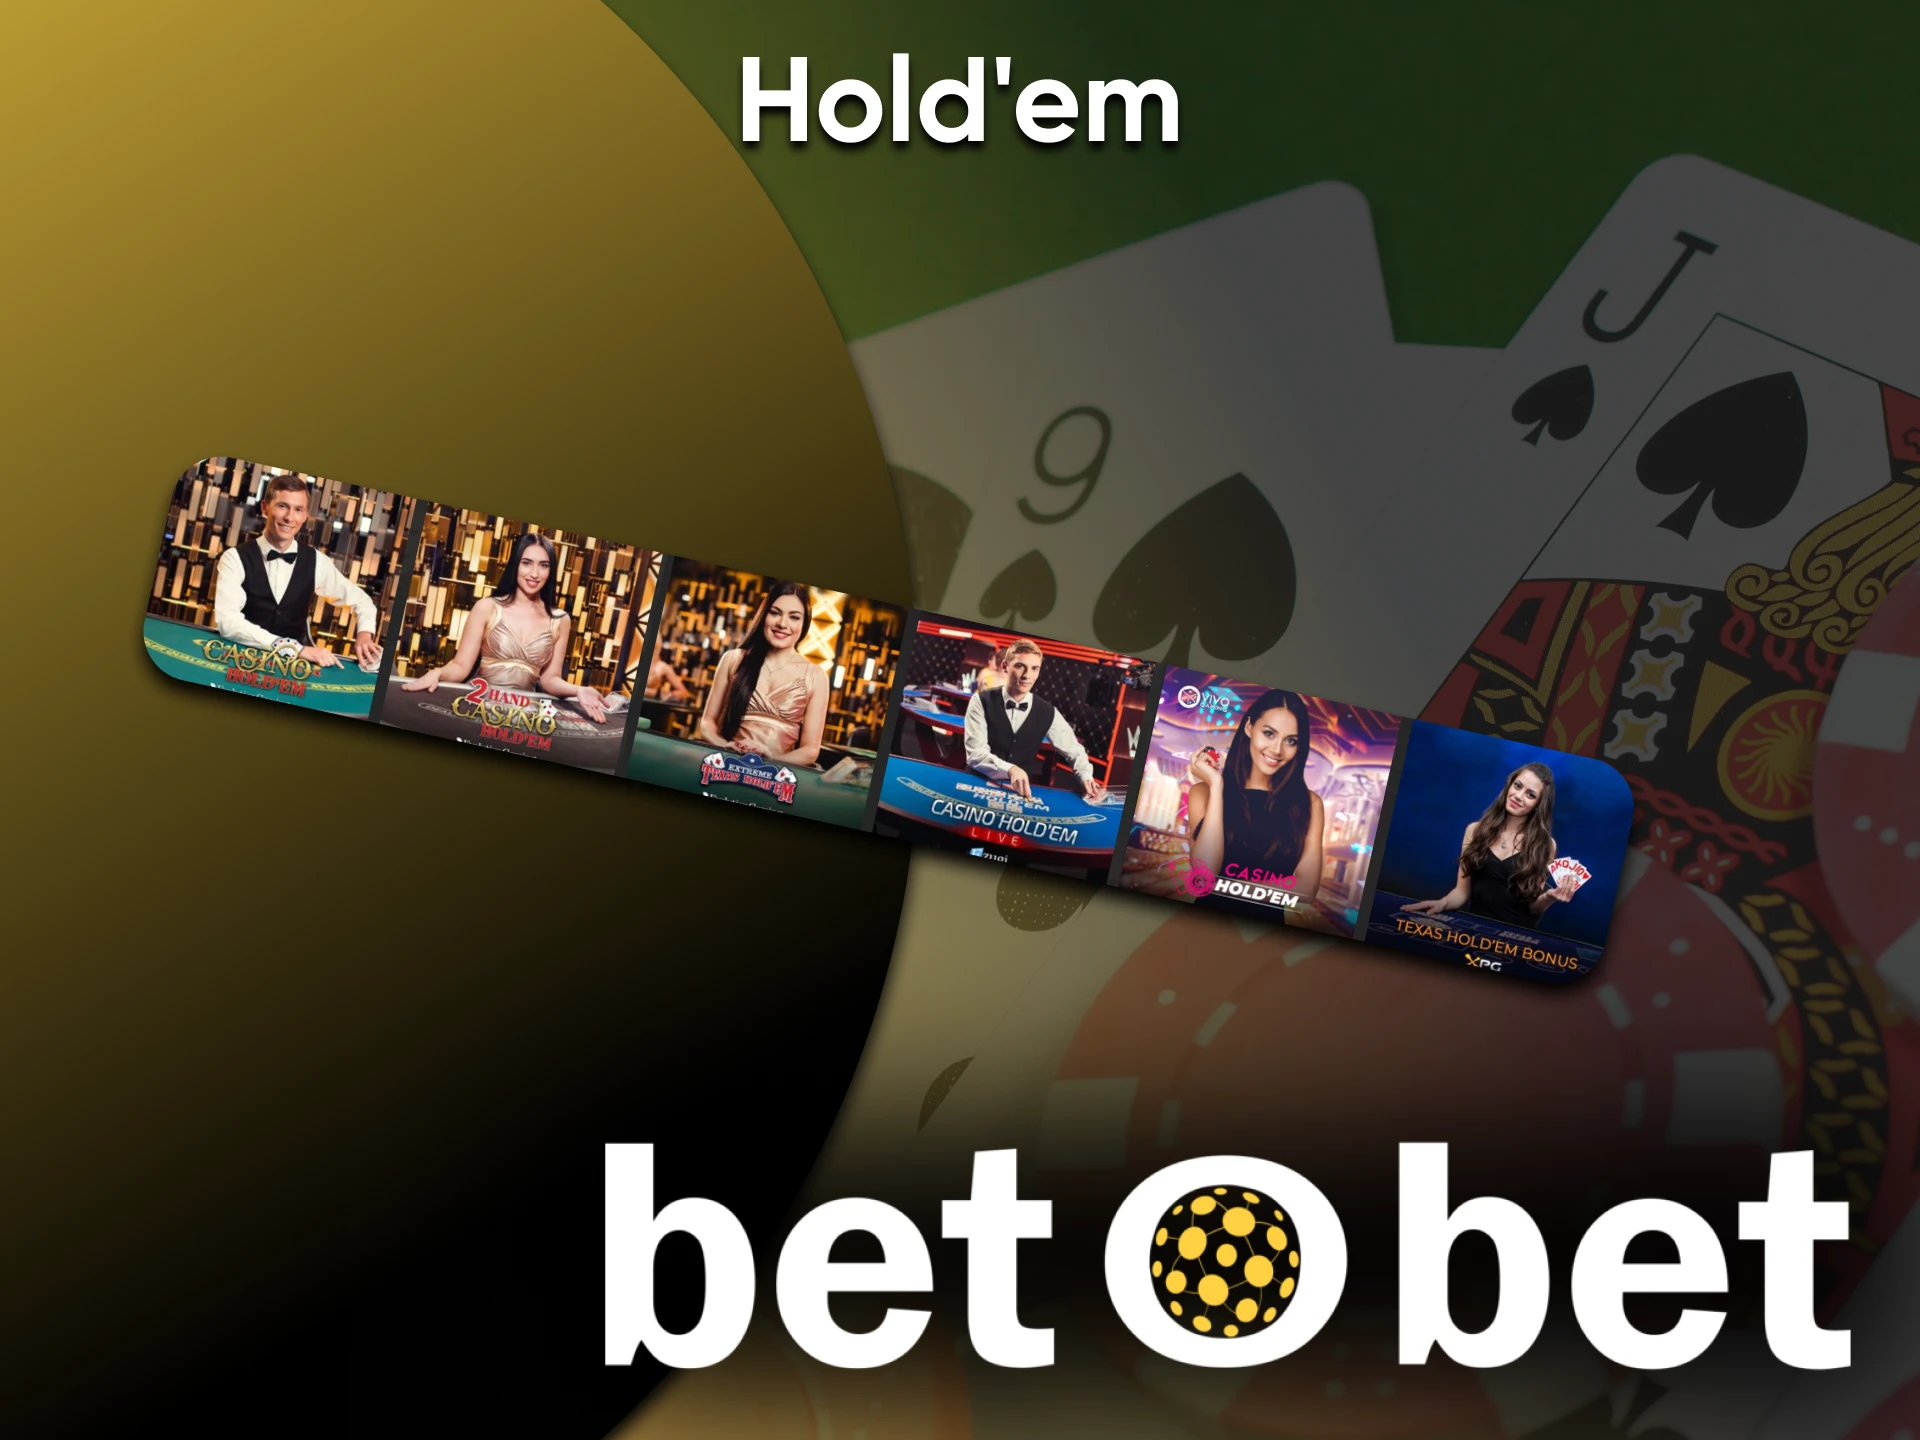 Para jogar Hold'em, vá a uma seção especial do Betbet.